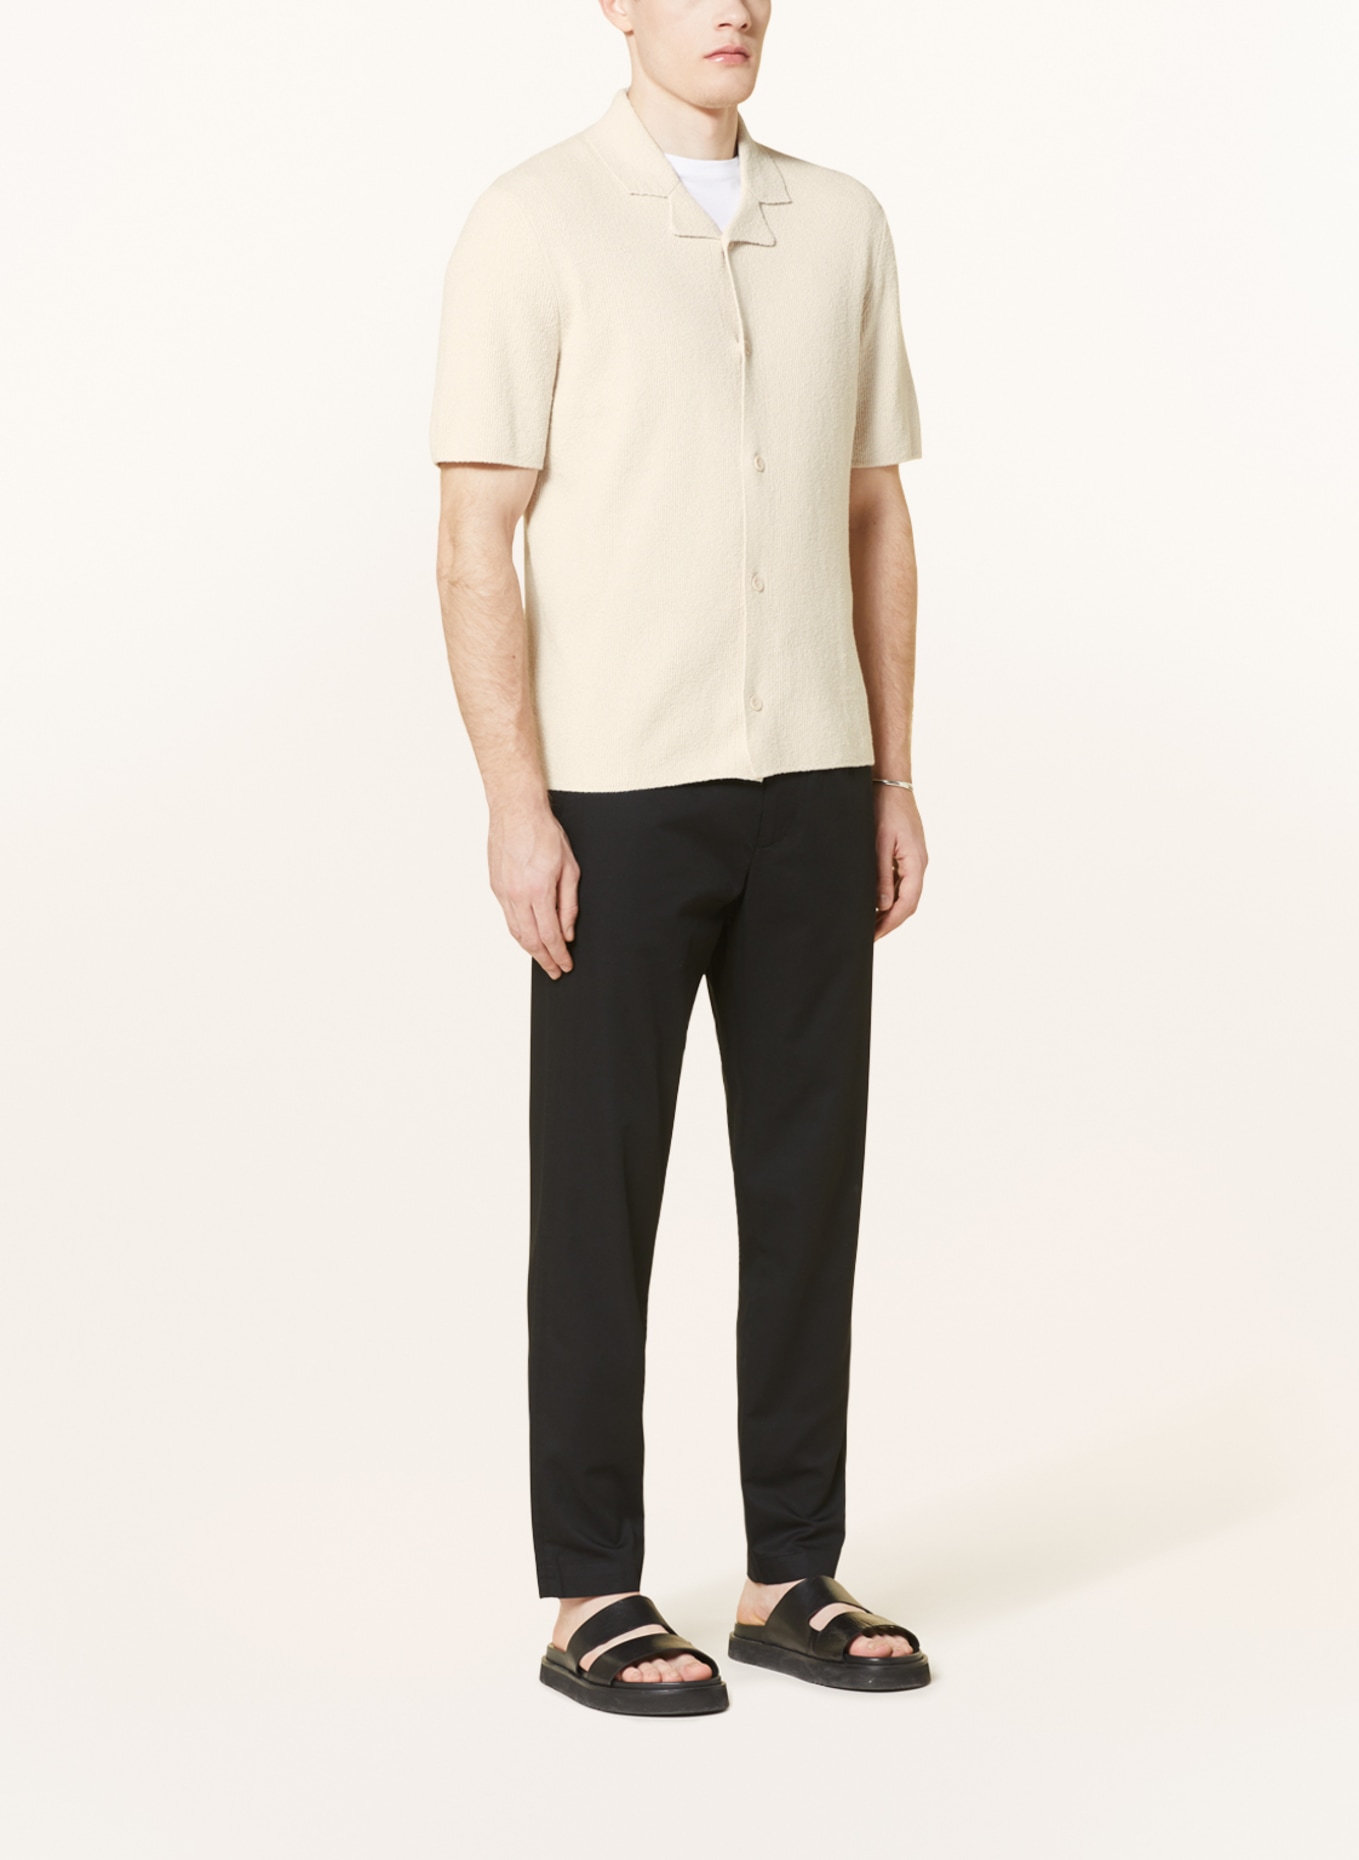 COS Knit shirt regular fit, Color: BEIGE (Image 2)